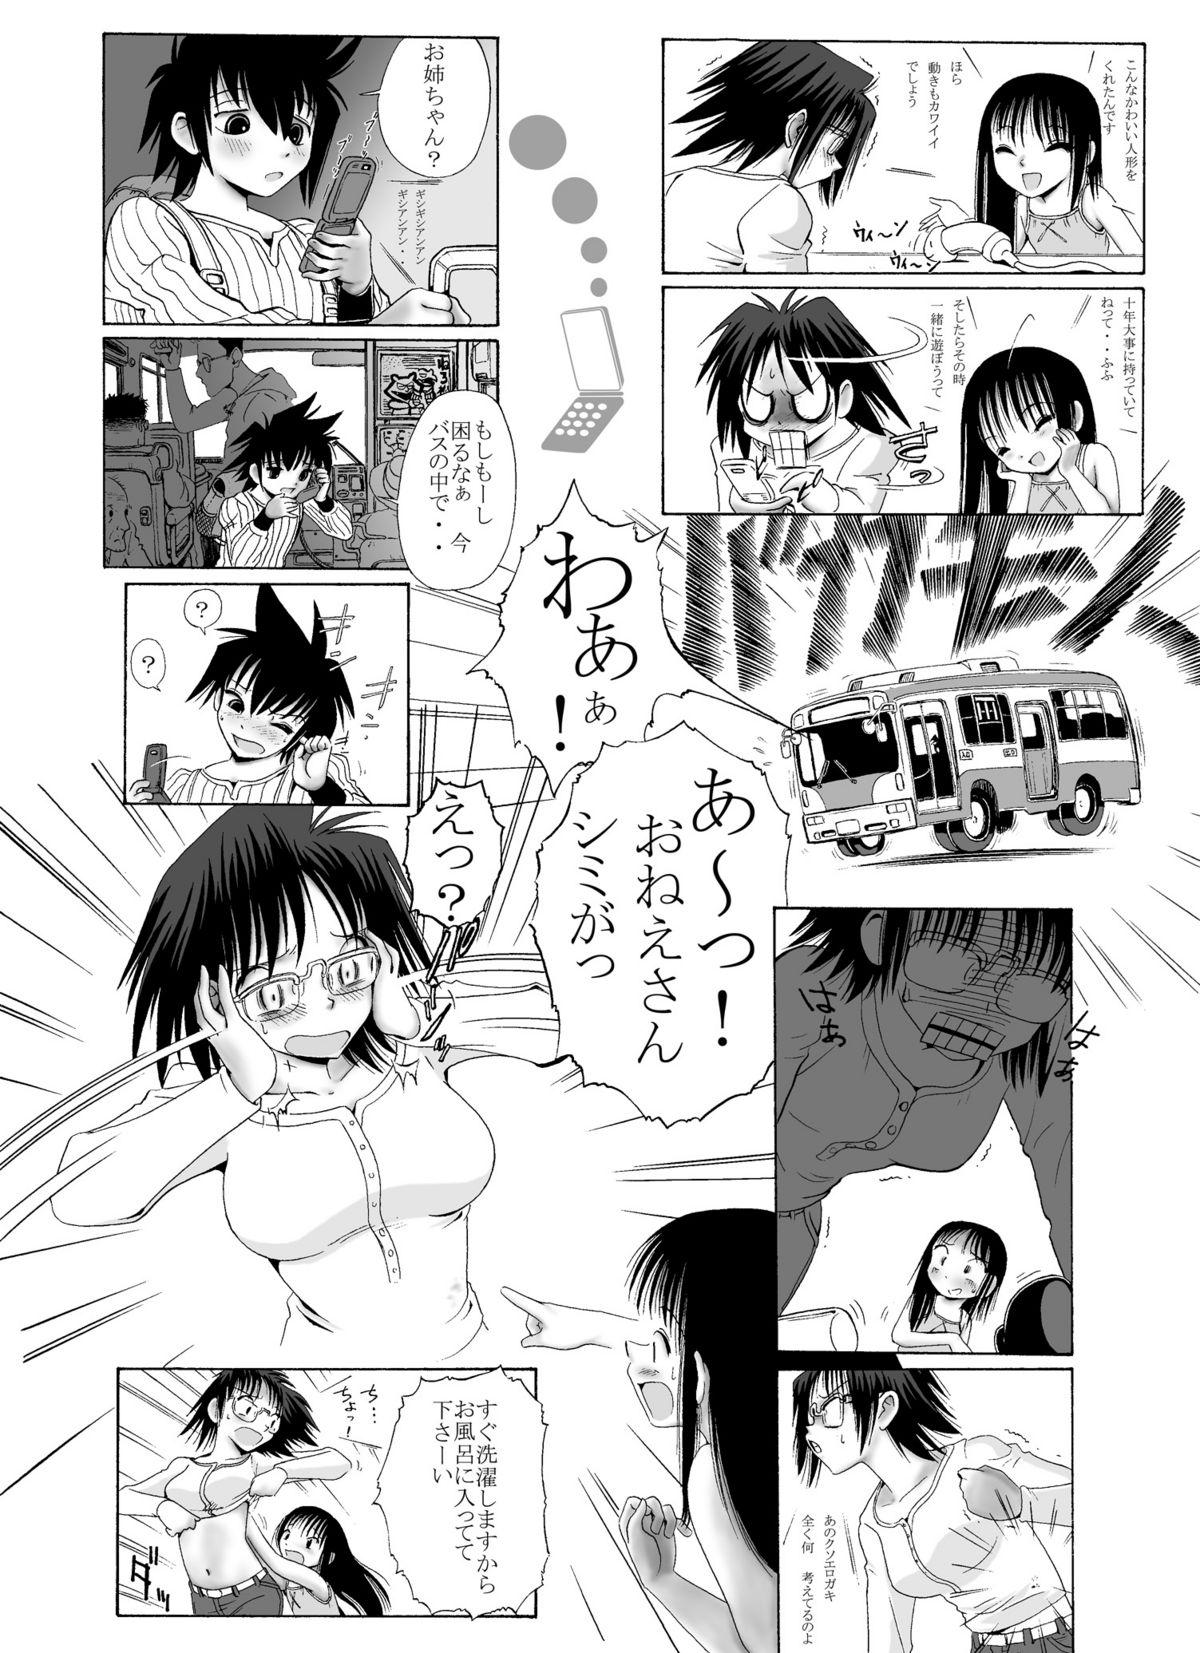 Orgy mitsumi to chiki mitsumi no mitsu 4 Glasses - Page 8